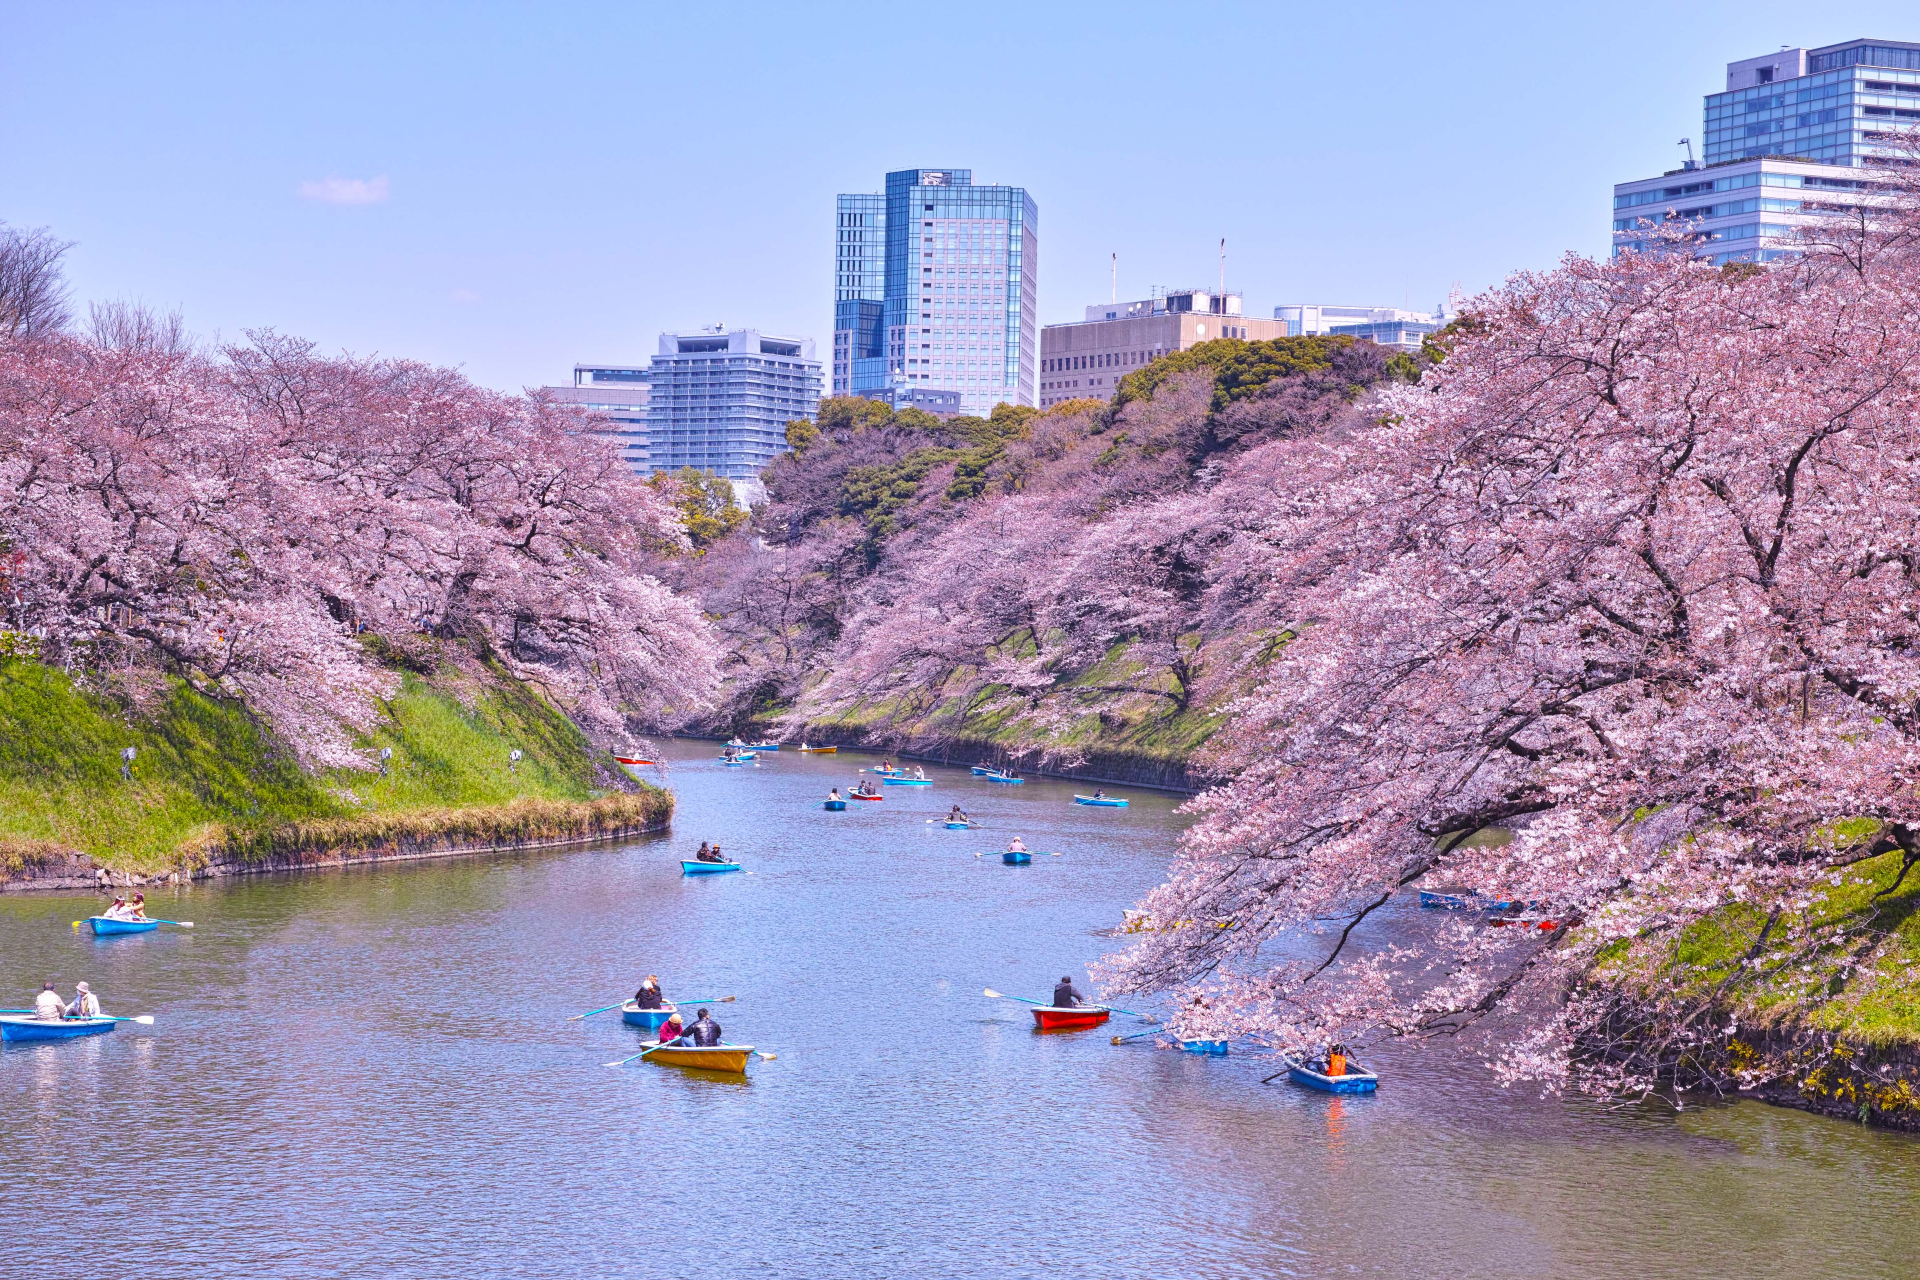 Khoảng gần 50.000 khách du lịch Việt Nam đến Nhật ngắm hoa anh đào - ảnh 4